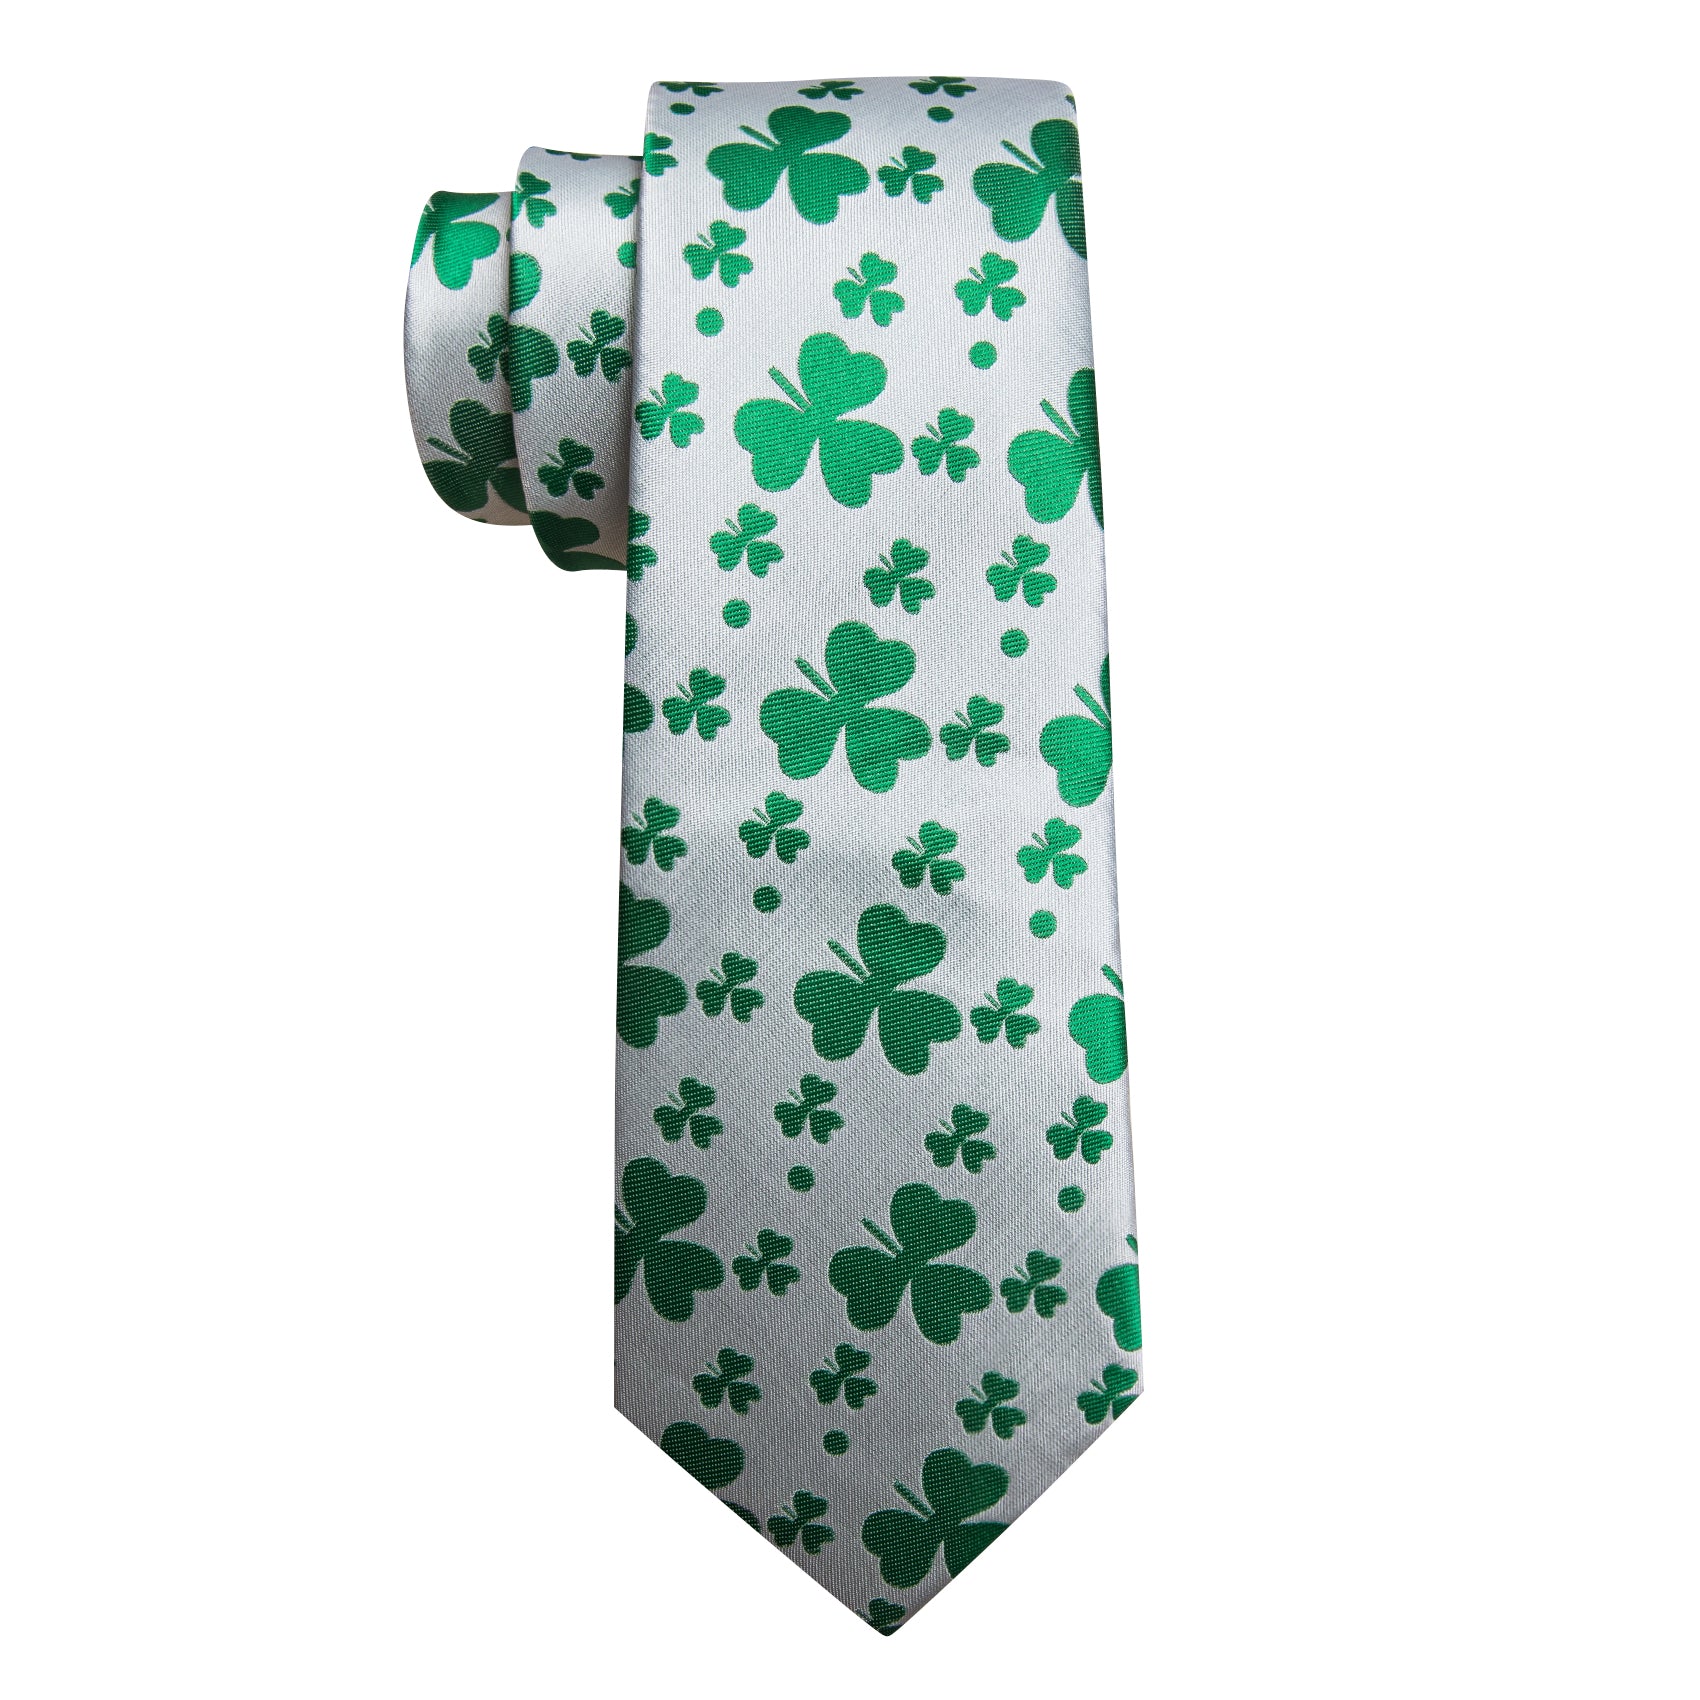 White Green Clover Silk Tie Handkerchief Cufflinks Set